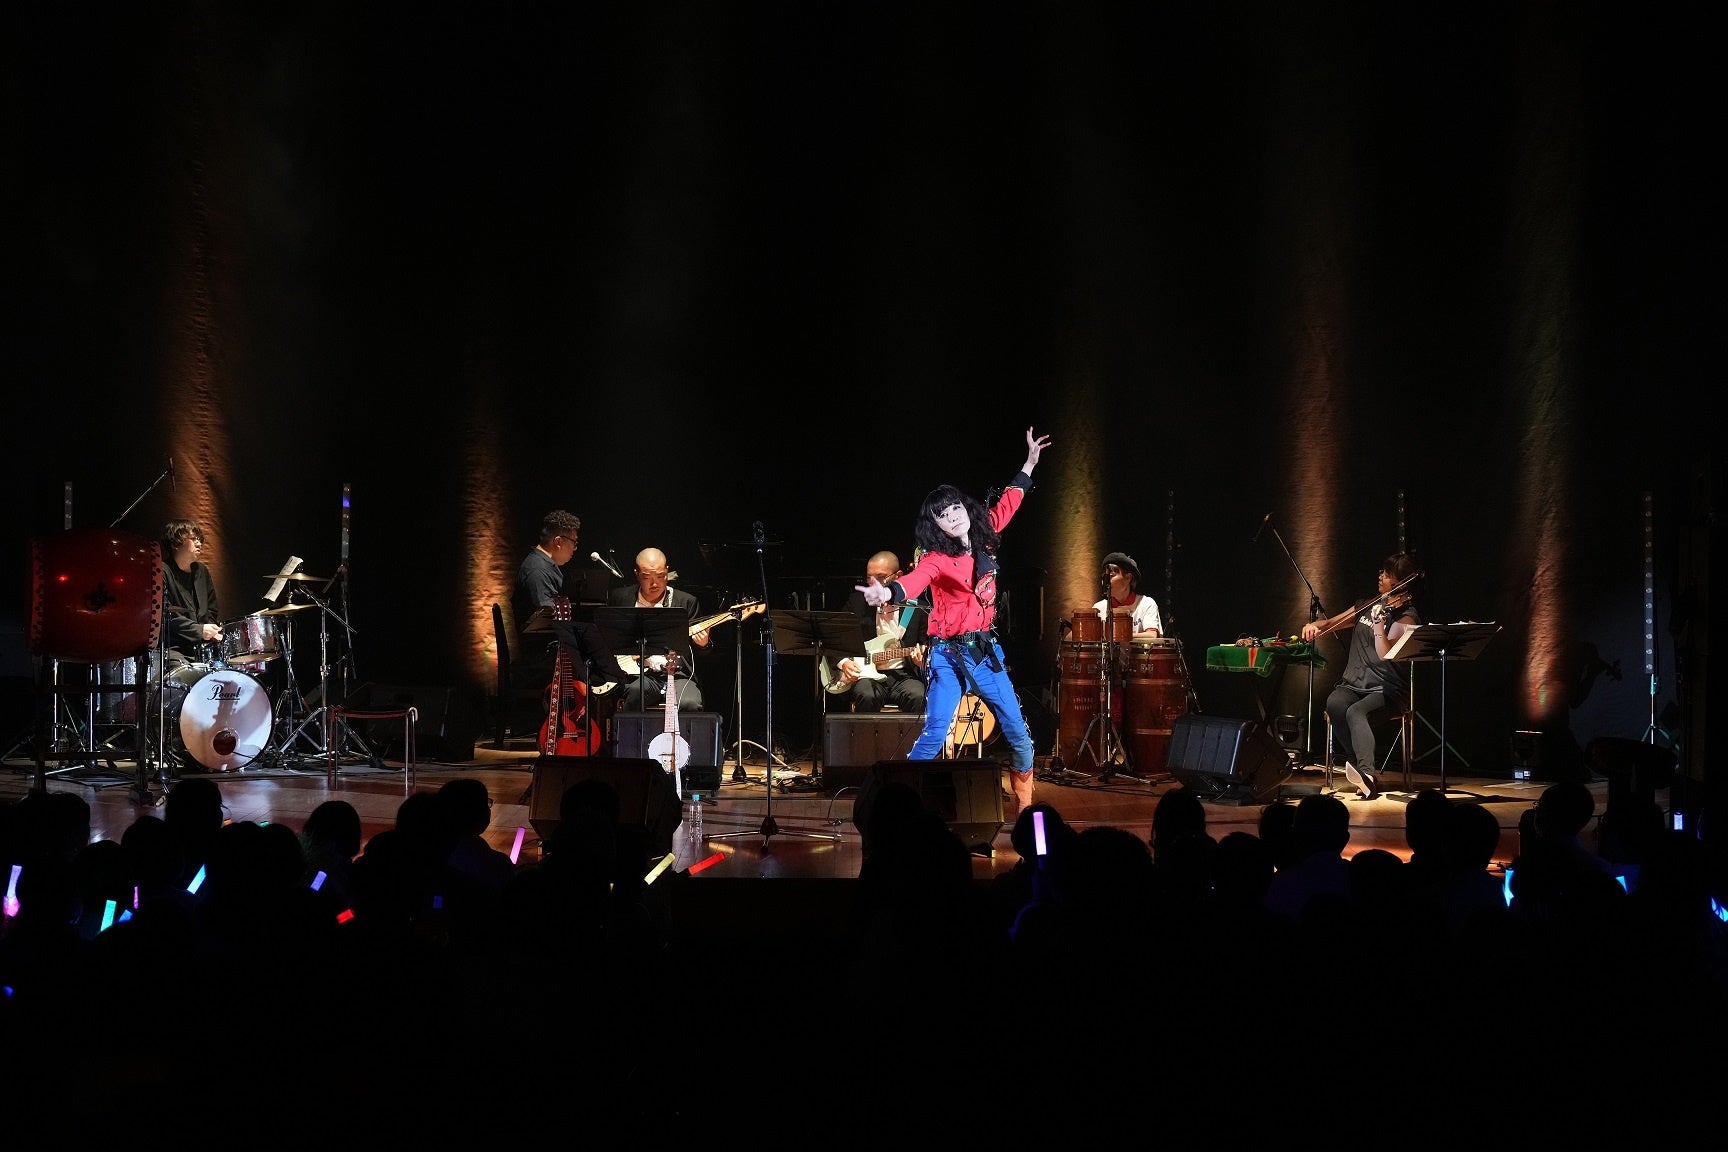 ムード歌謡の貴公子、タブレット純が東京・草月ホールでリサイタル。初挑戦の浪曲からムード歌謡、ジャズまで20曲熱唱のサブ画像3